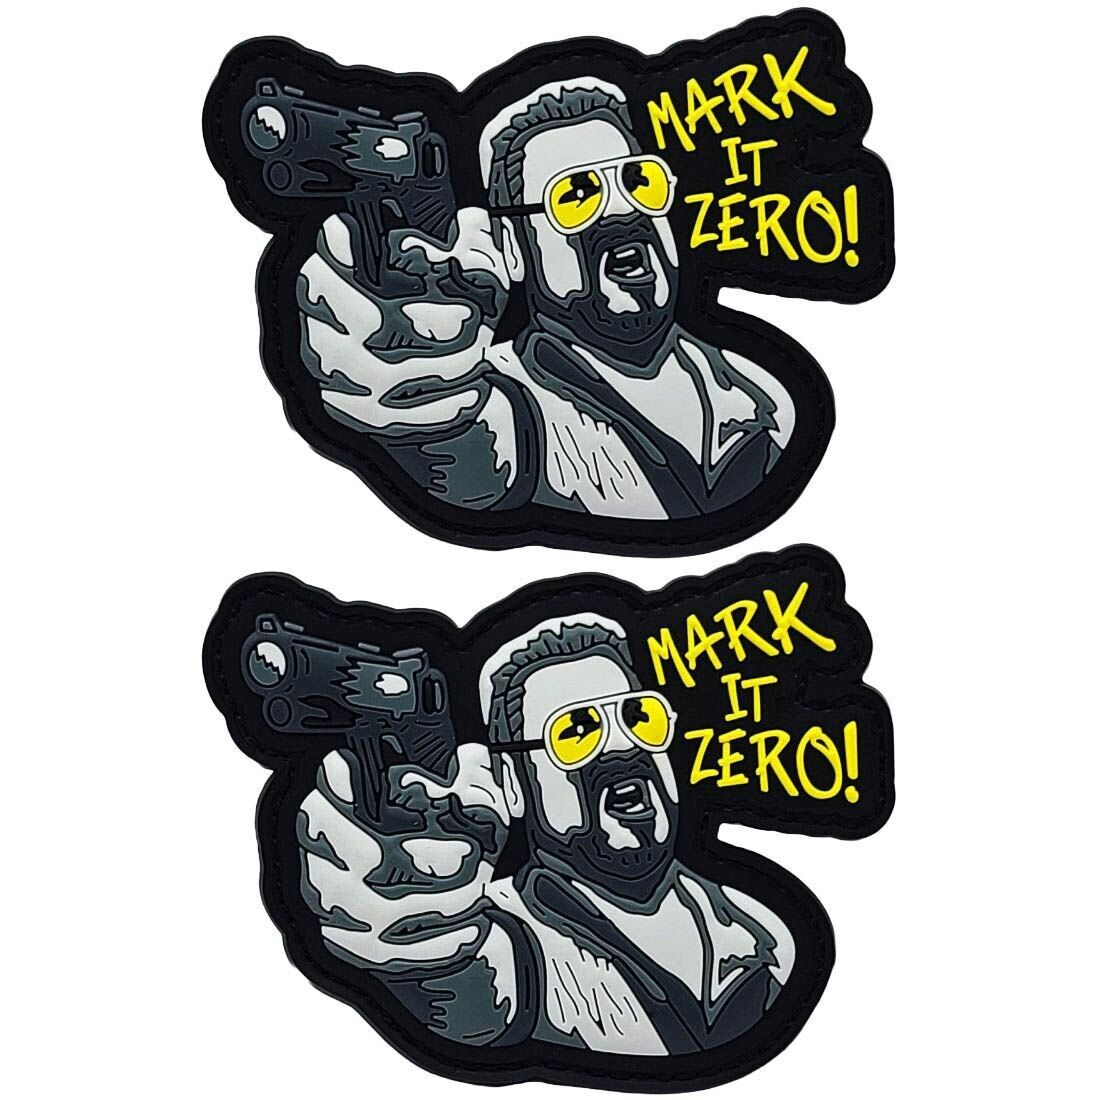 Mark It Zero Big Lebowski PVC RUBBER PATCH | 2PC  HOOK BACKING   3\